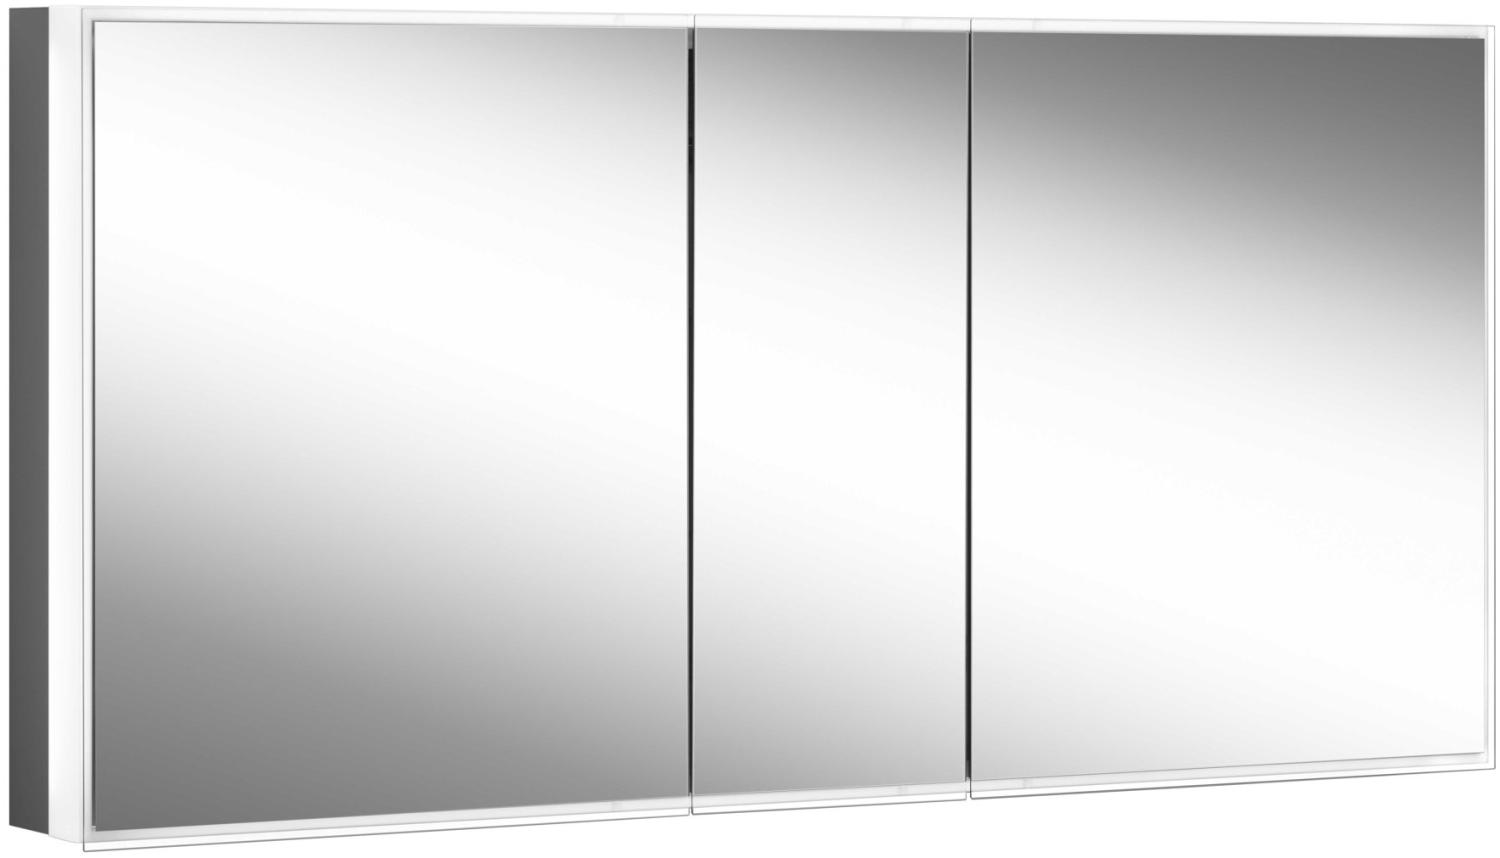 Schneider PREMIUM Line Superior LED Lichtspiegelschrank, 3 gleichgrosse Doppelspiegeltüren, 1825x73,6x16,7cm, 181. 180, Ausführung: EU-Norm/Korpus schwarz matt - 181. 180. 02. 41 Bild 1